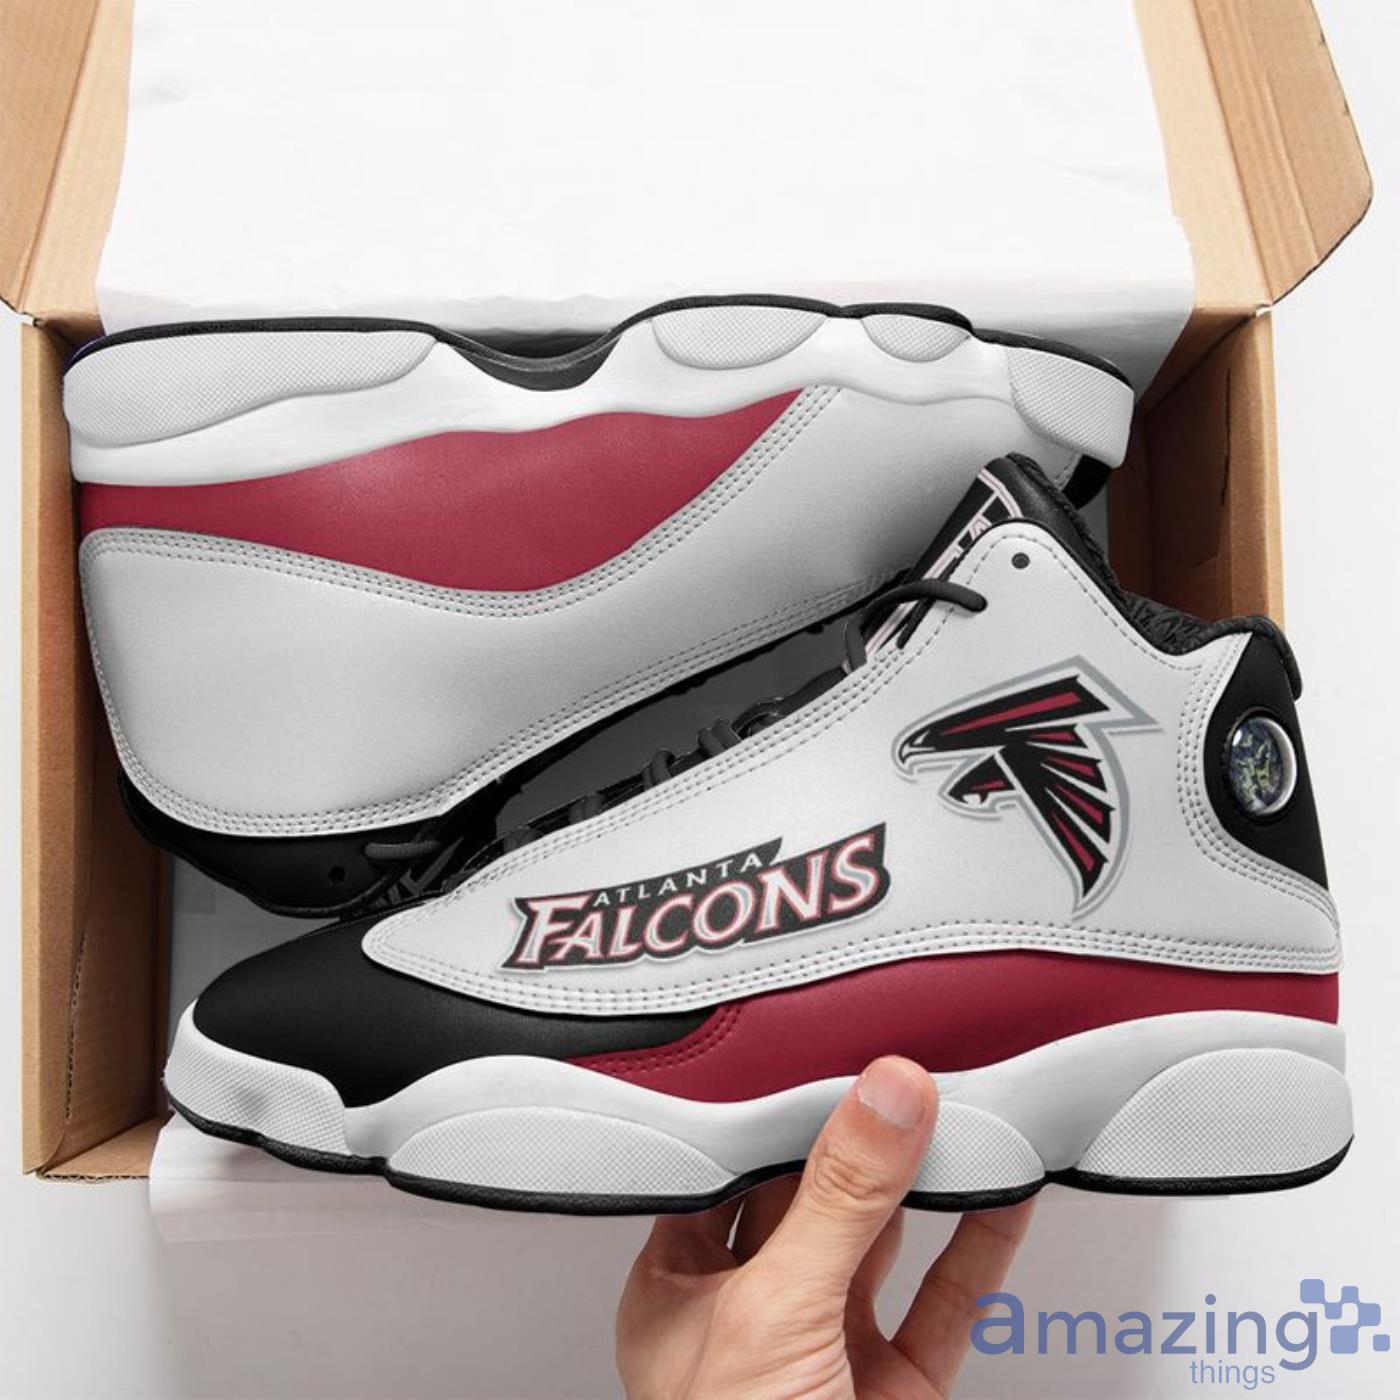 Nfl Atlanta Falcons Air Jordan 13 For Fans Sneakers